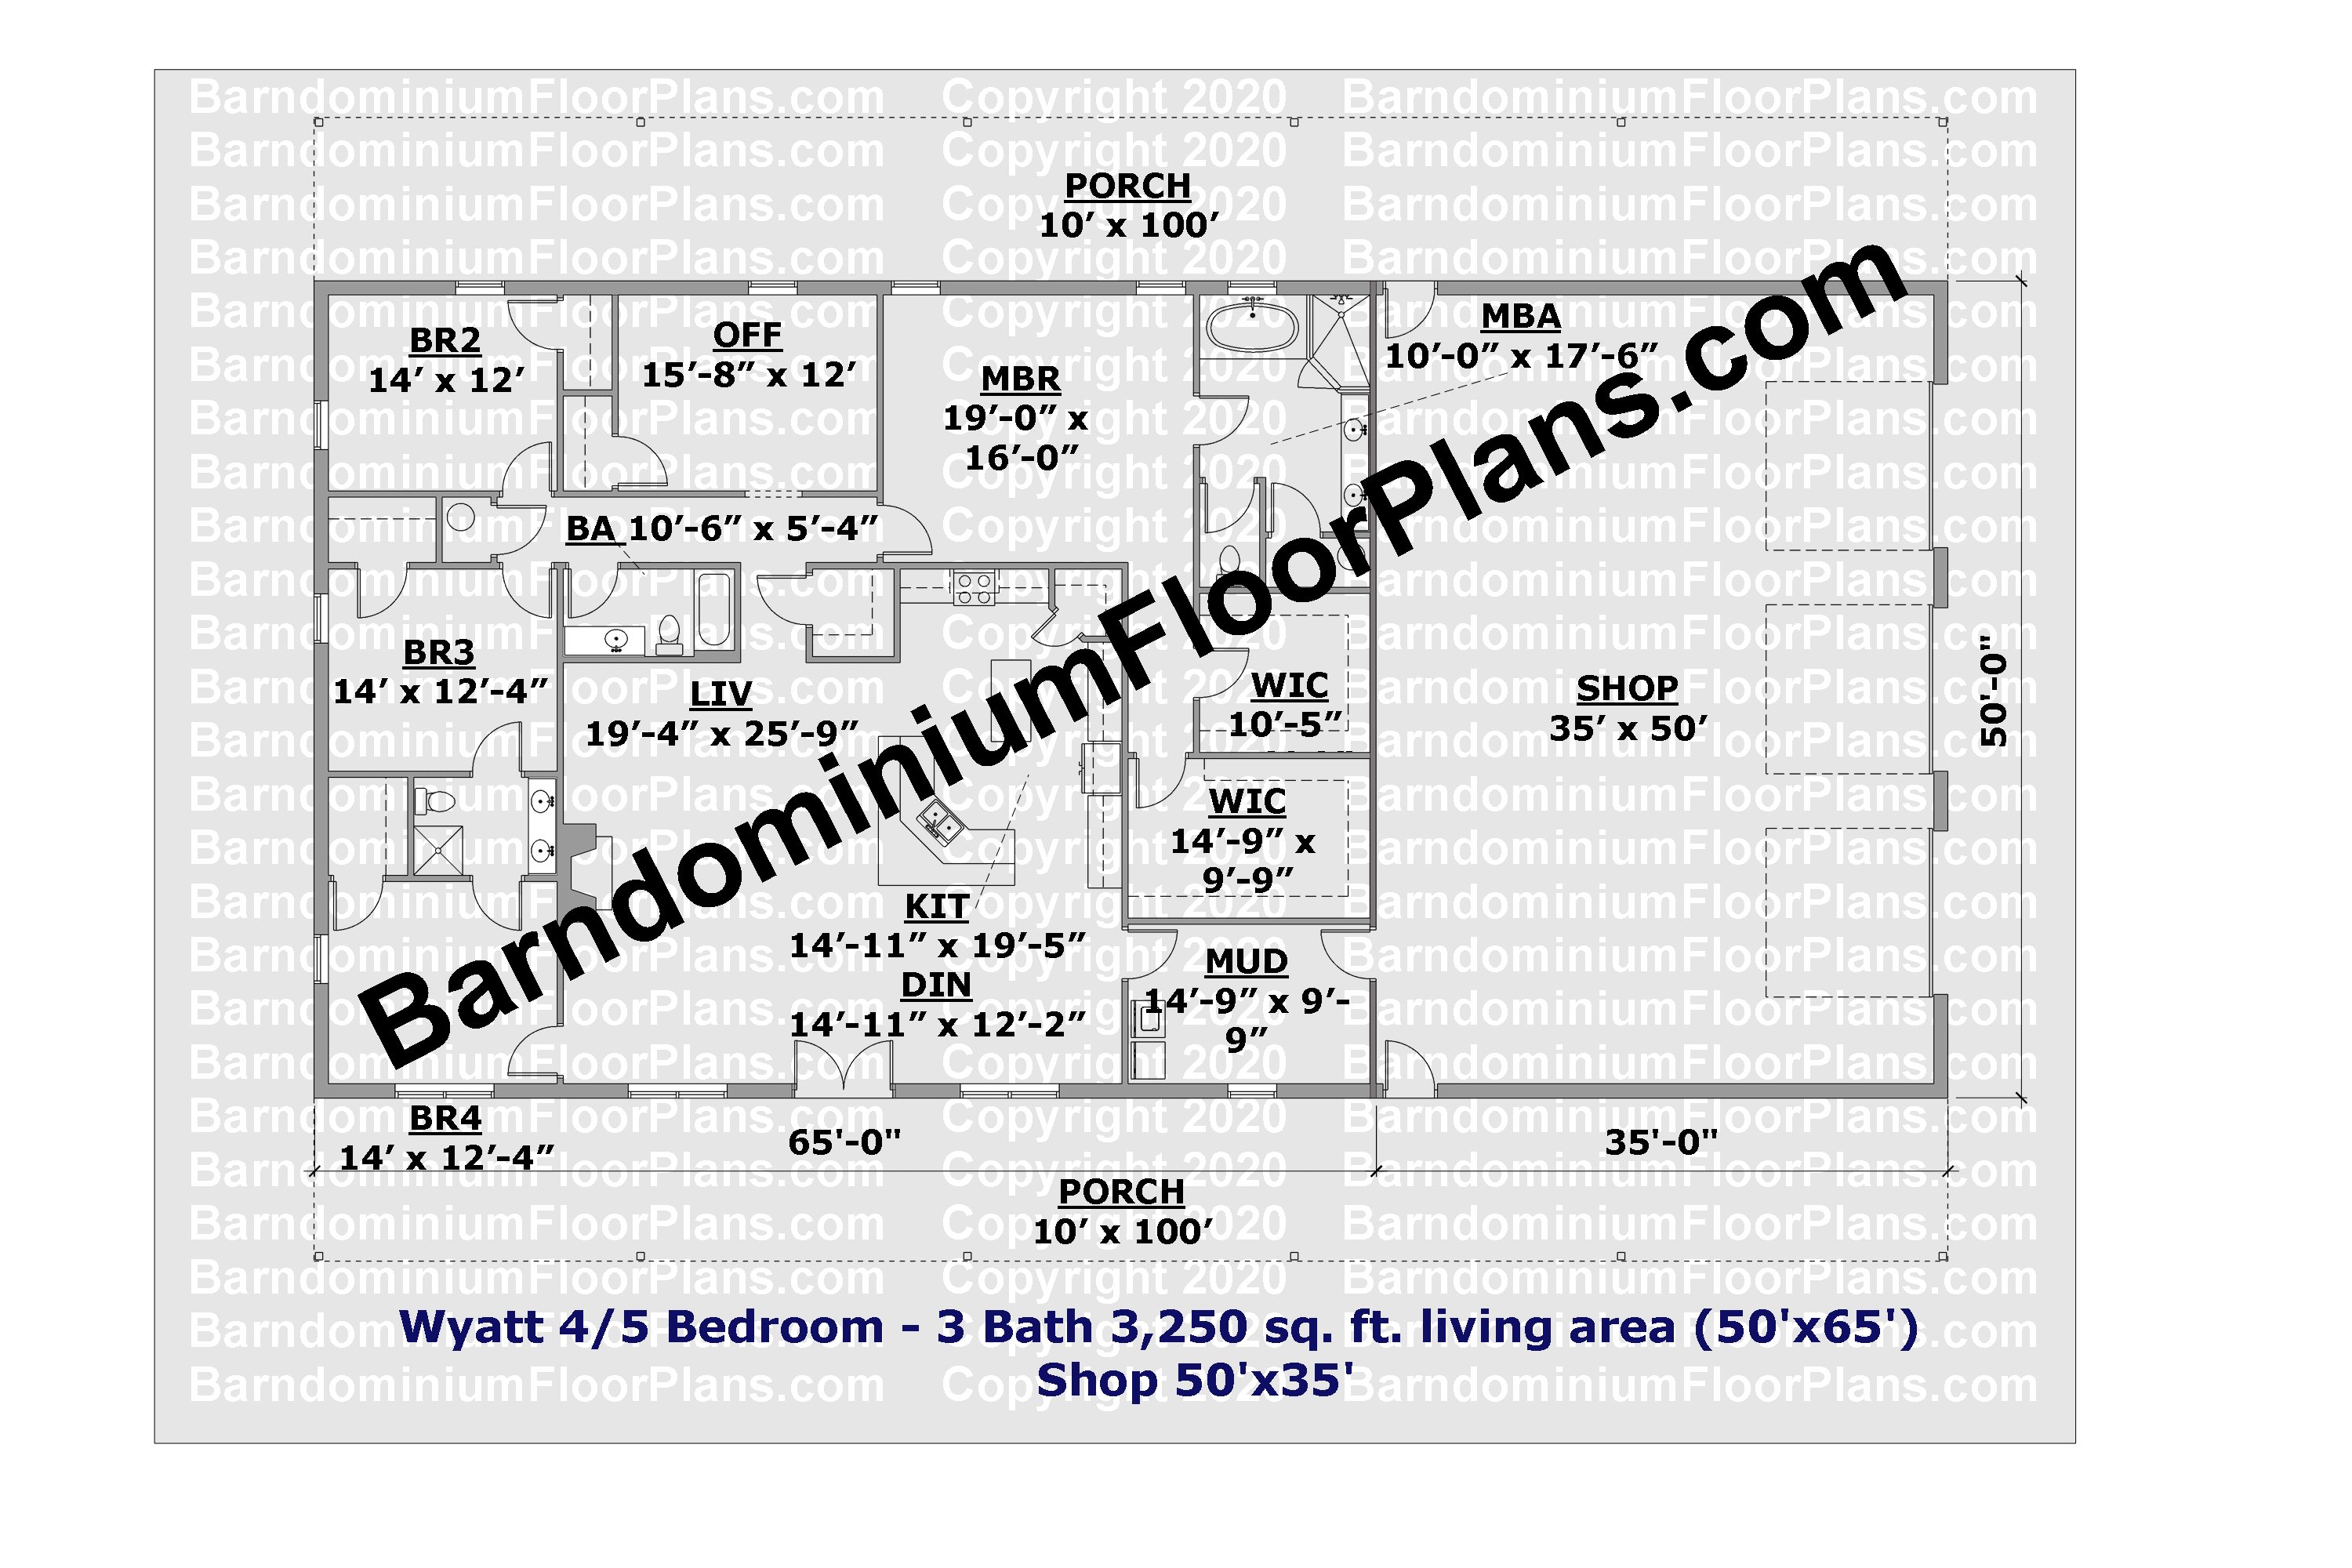 5 bedroom barndominium floor plan with 3 bathrooms 50 foot wide 3,250 sq.ft.- Wyatt